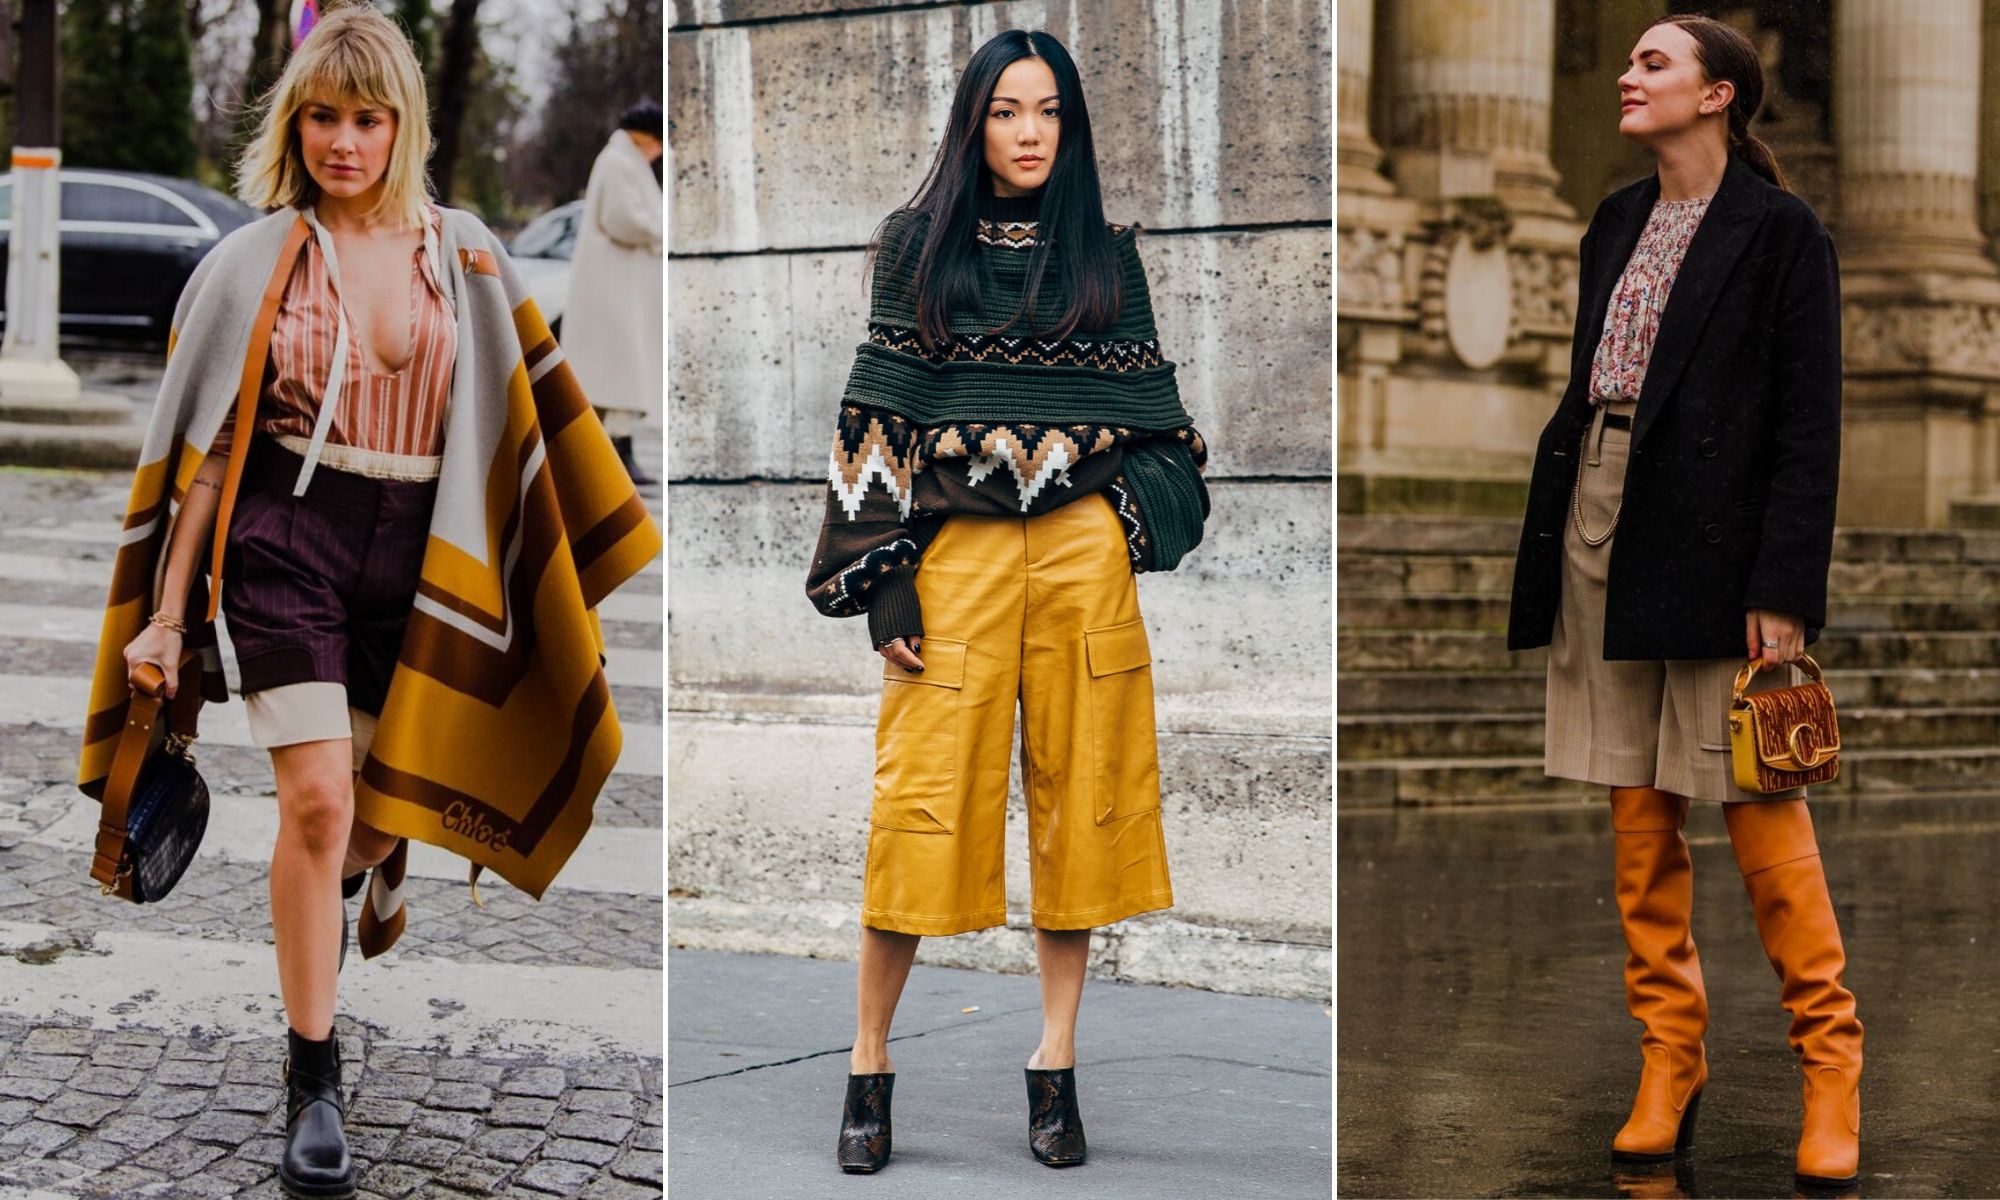   Những bản phối ấn tượng với quần bermuda xuất hiện trên đường phố New York, London, Milan và Paris trong Tuần lễ thời trang Thu – Đông 2020. (Ảnh: Tyler Joe, Style Du Monde)   